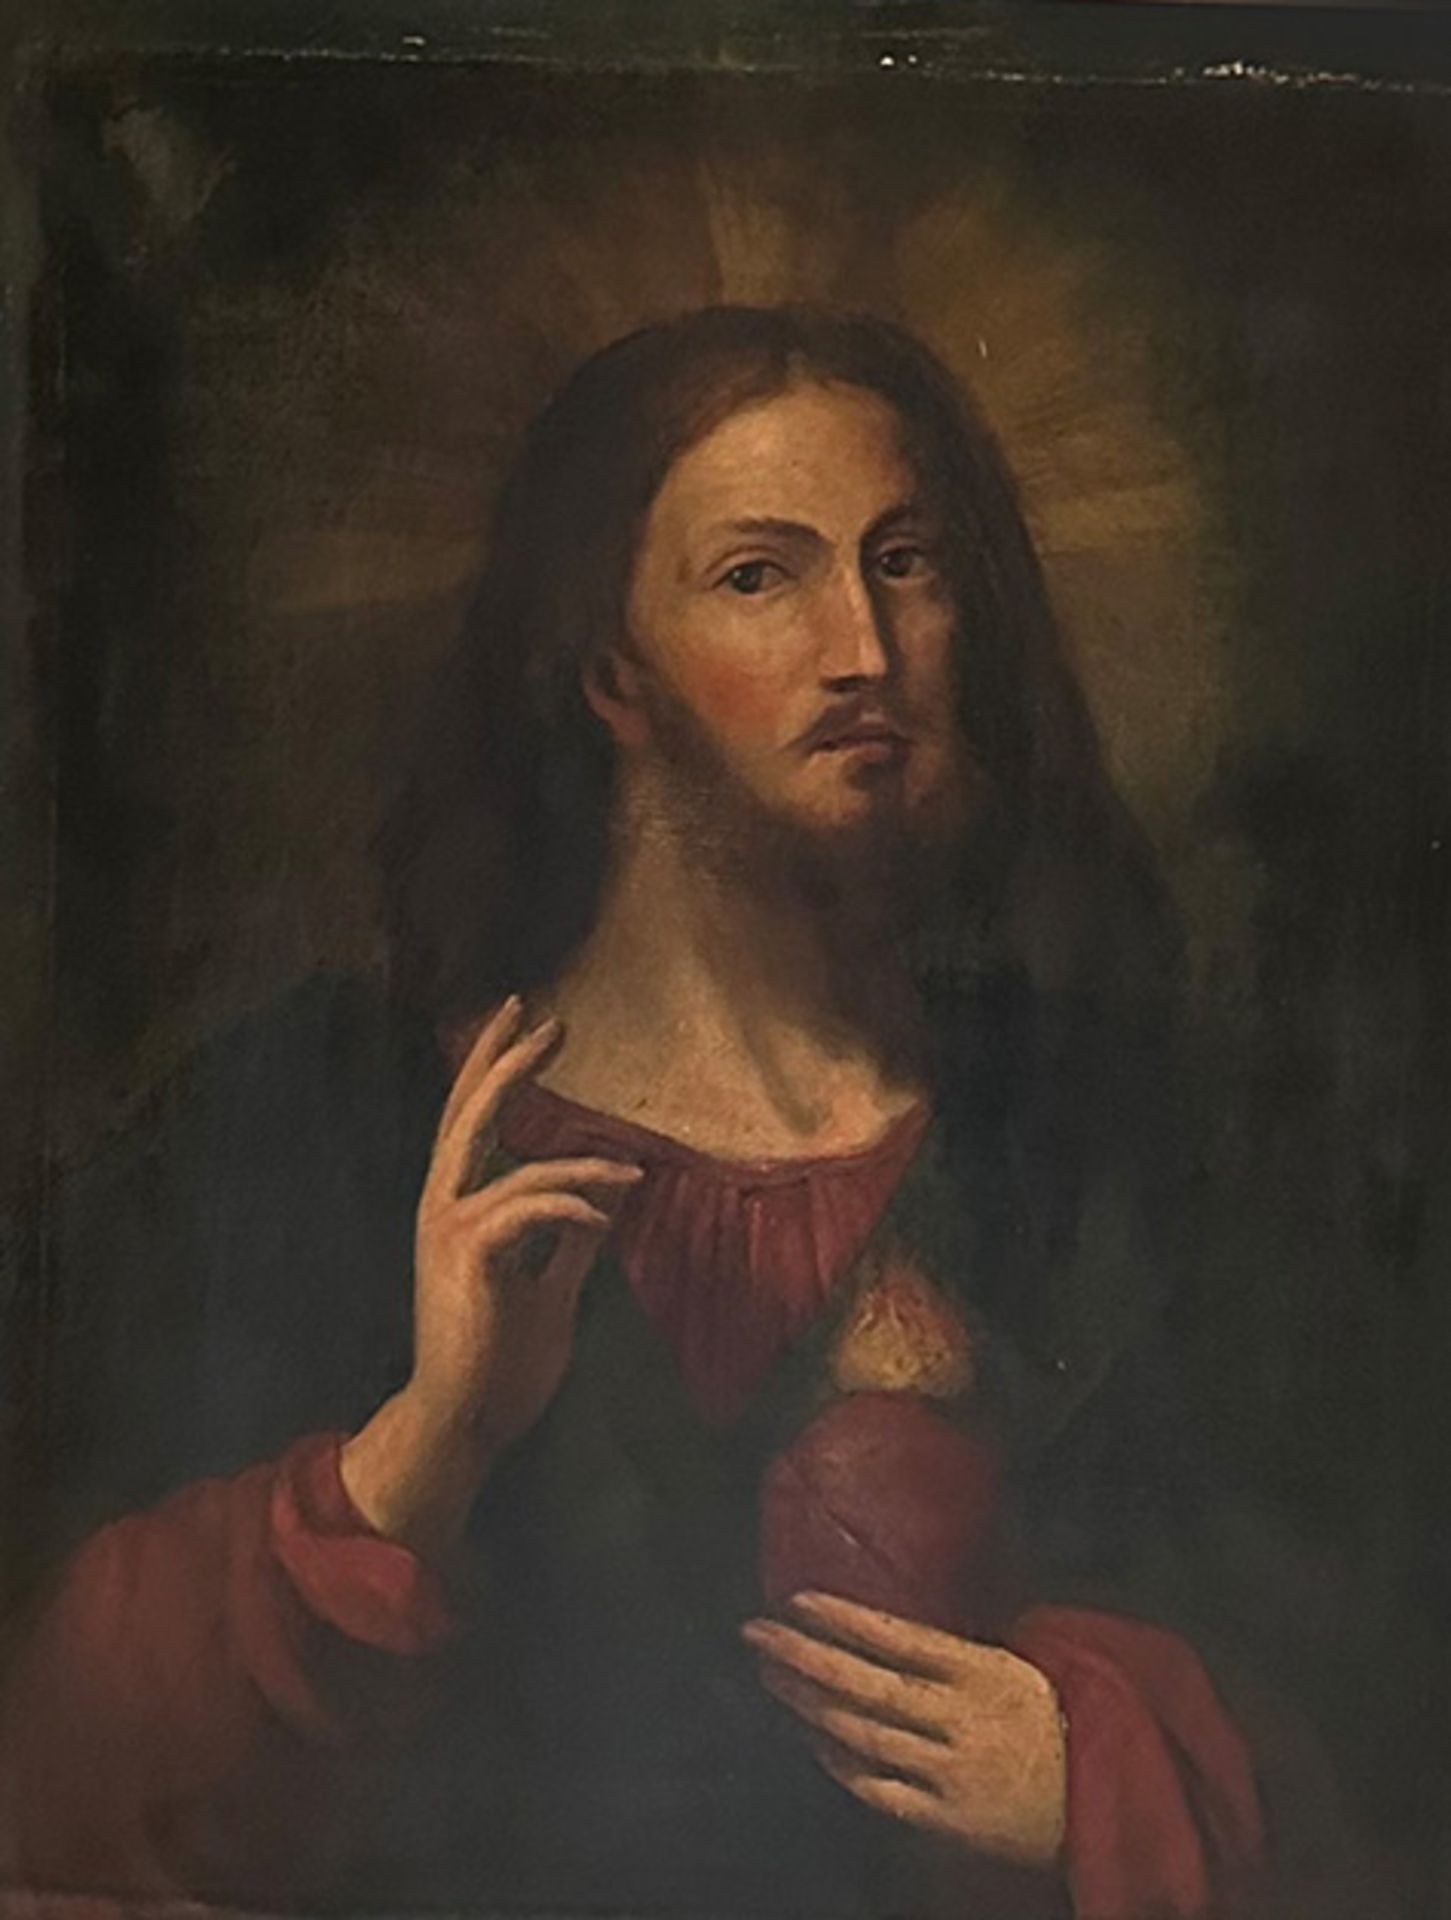 Unbekannter Künstler, Andachtsbild, 19. Jh., Jesus mit flammenden Herzen, Öl/Lwd, Altersspuren, 82 x - Bild 3 aus 4